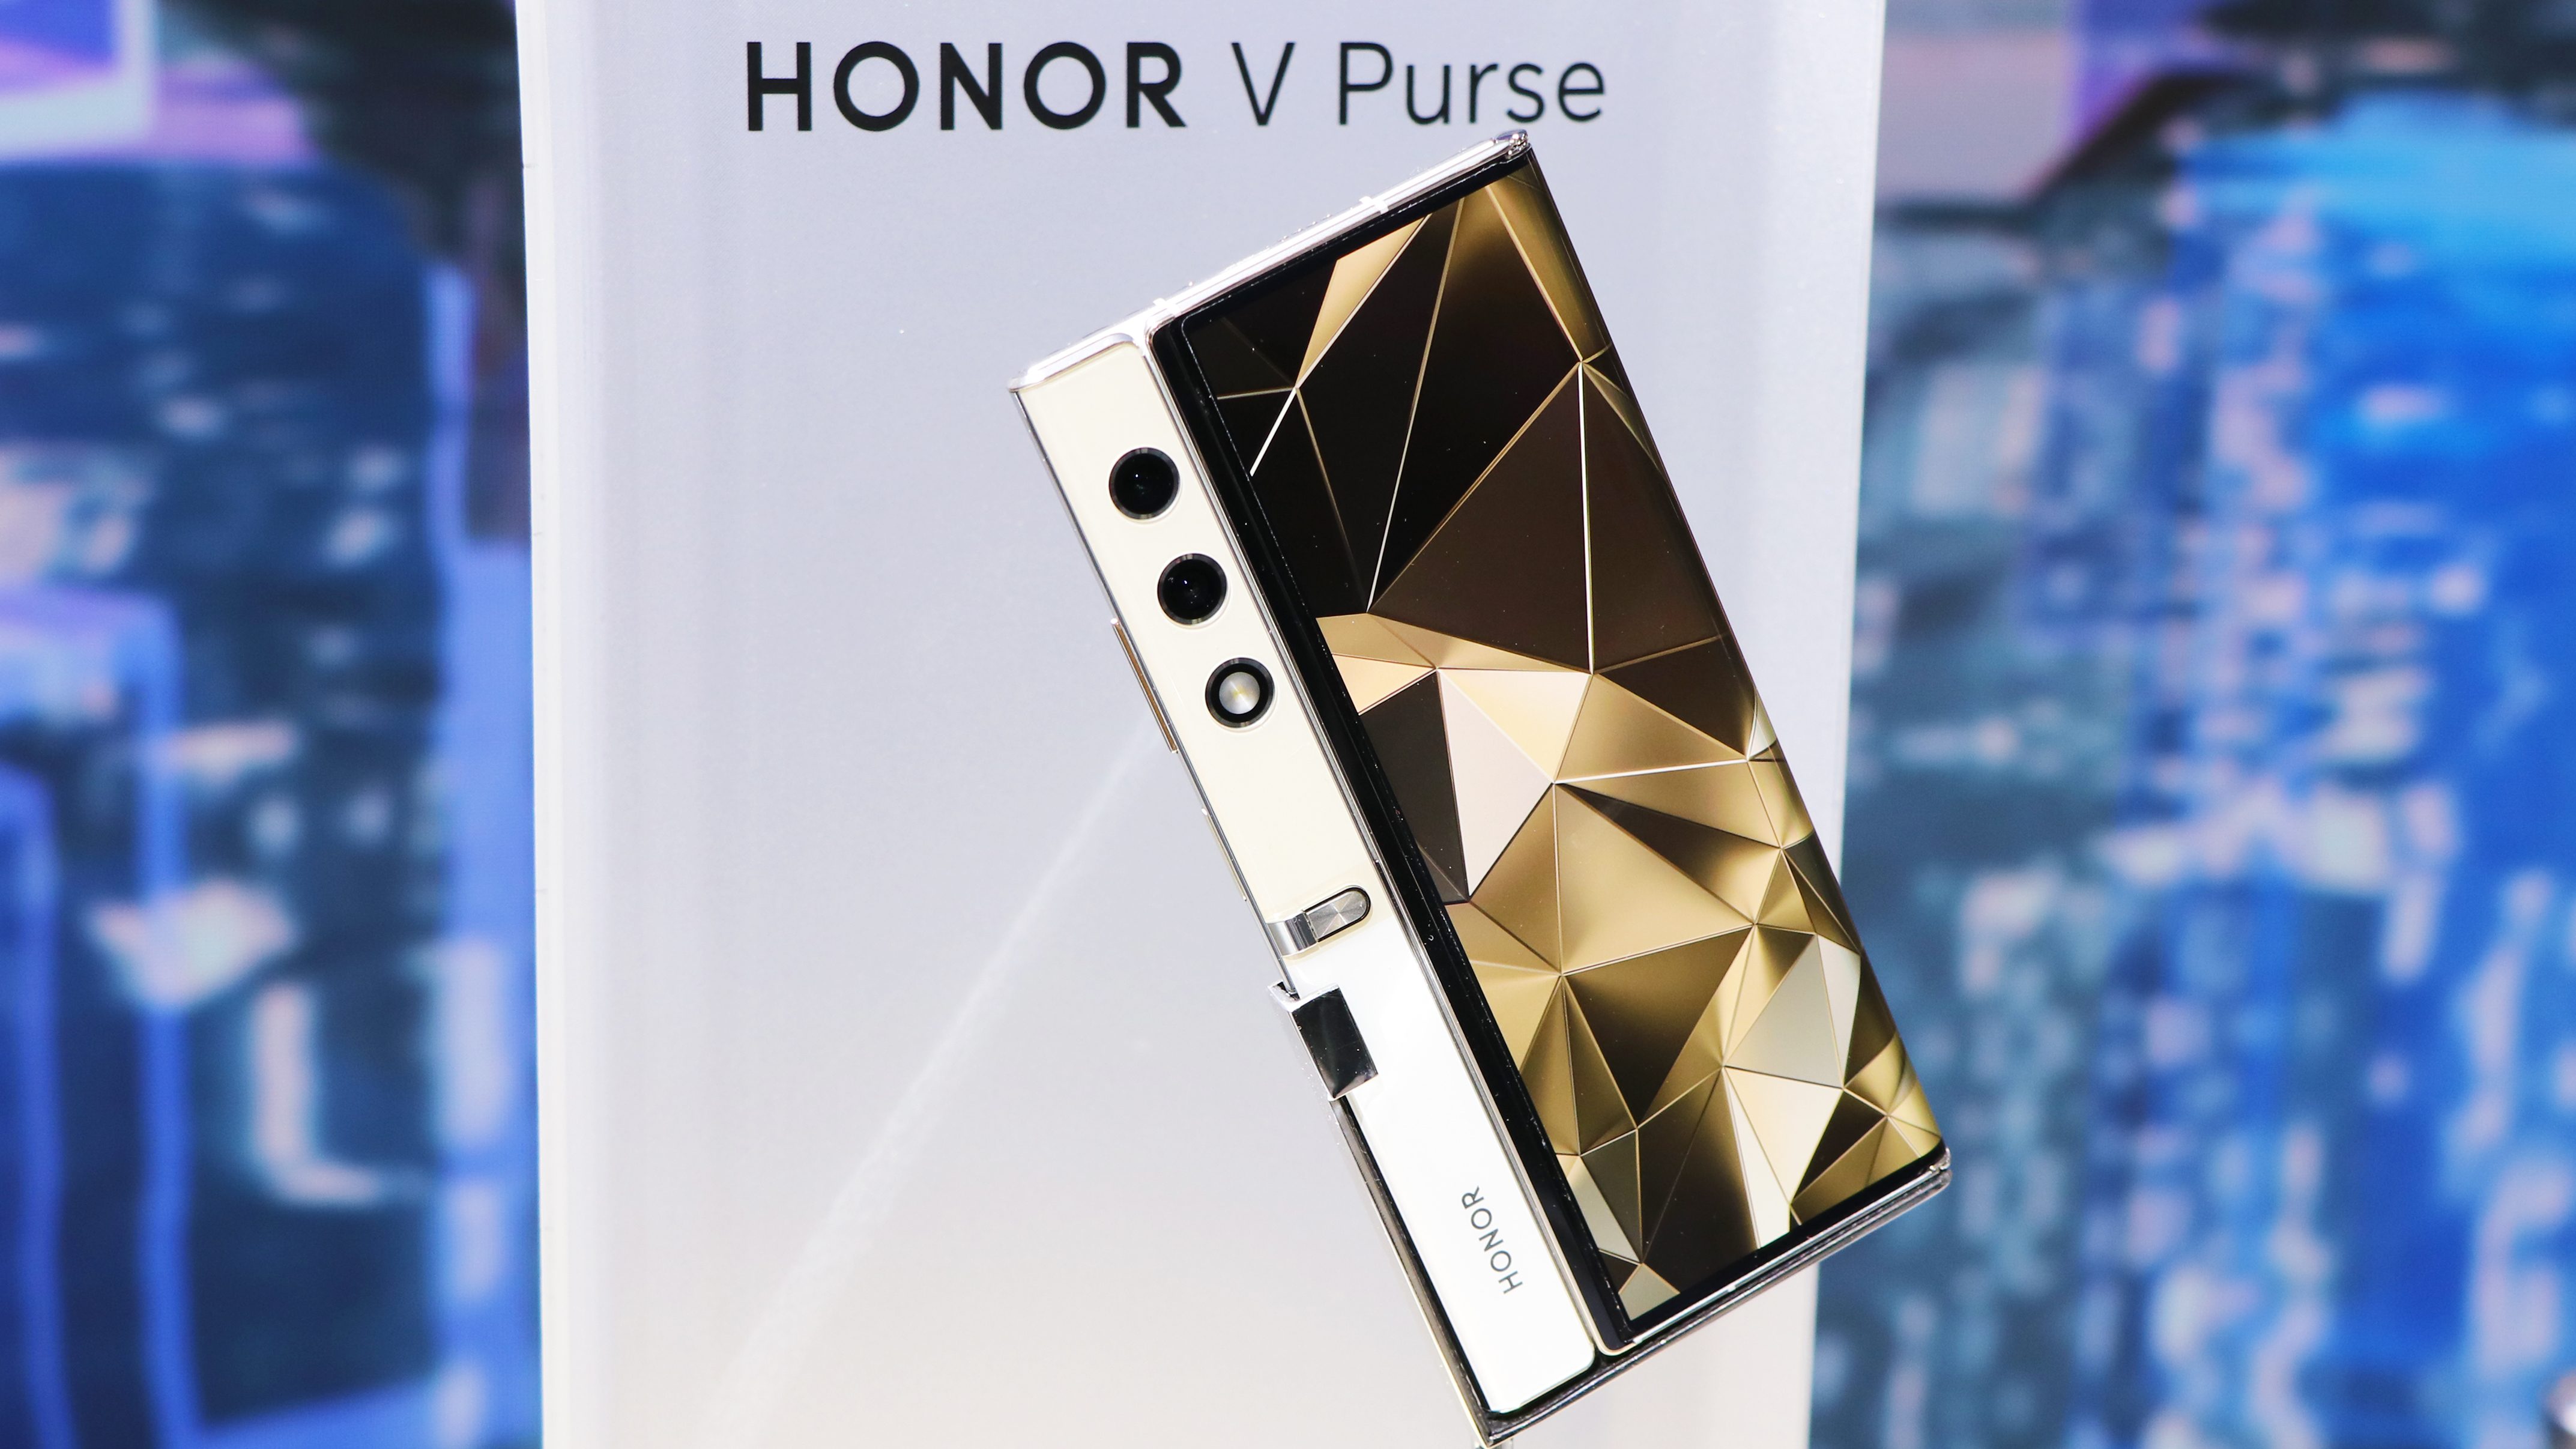 Inte bara ett koncept, utan en smartphone i produktion: Honor V Purse debuterar den 19 september